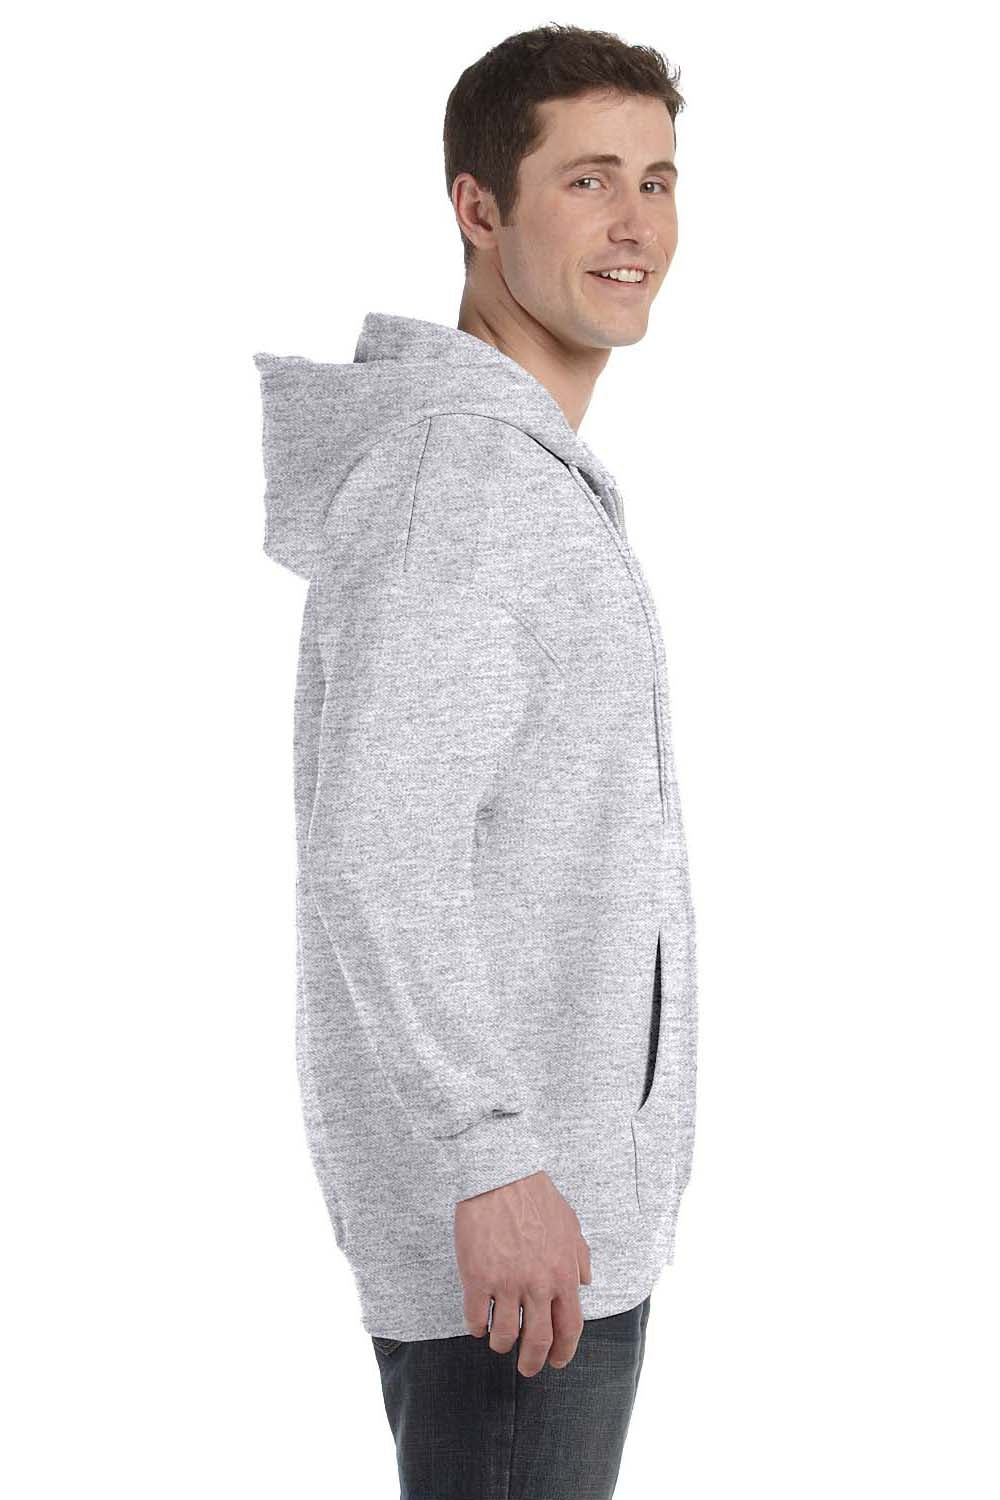 Hanes F280 Mens Ultimate Cotton PrintPro XP Full Zip Hooded Sweatshirt Hoodie Ash Grey Side